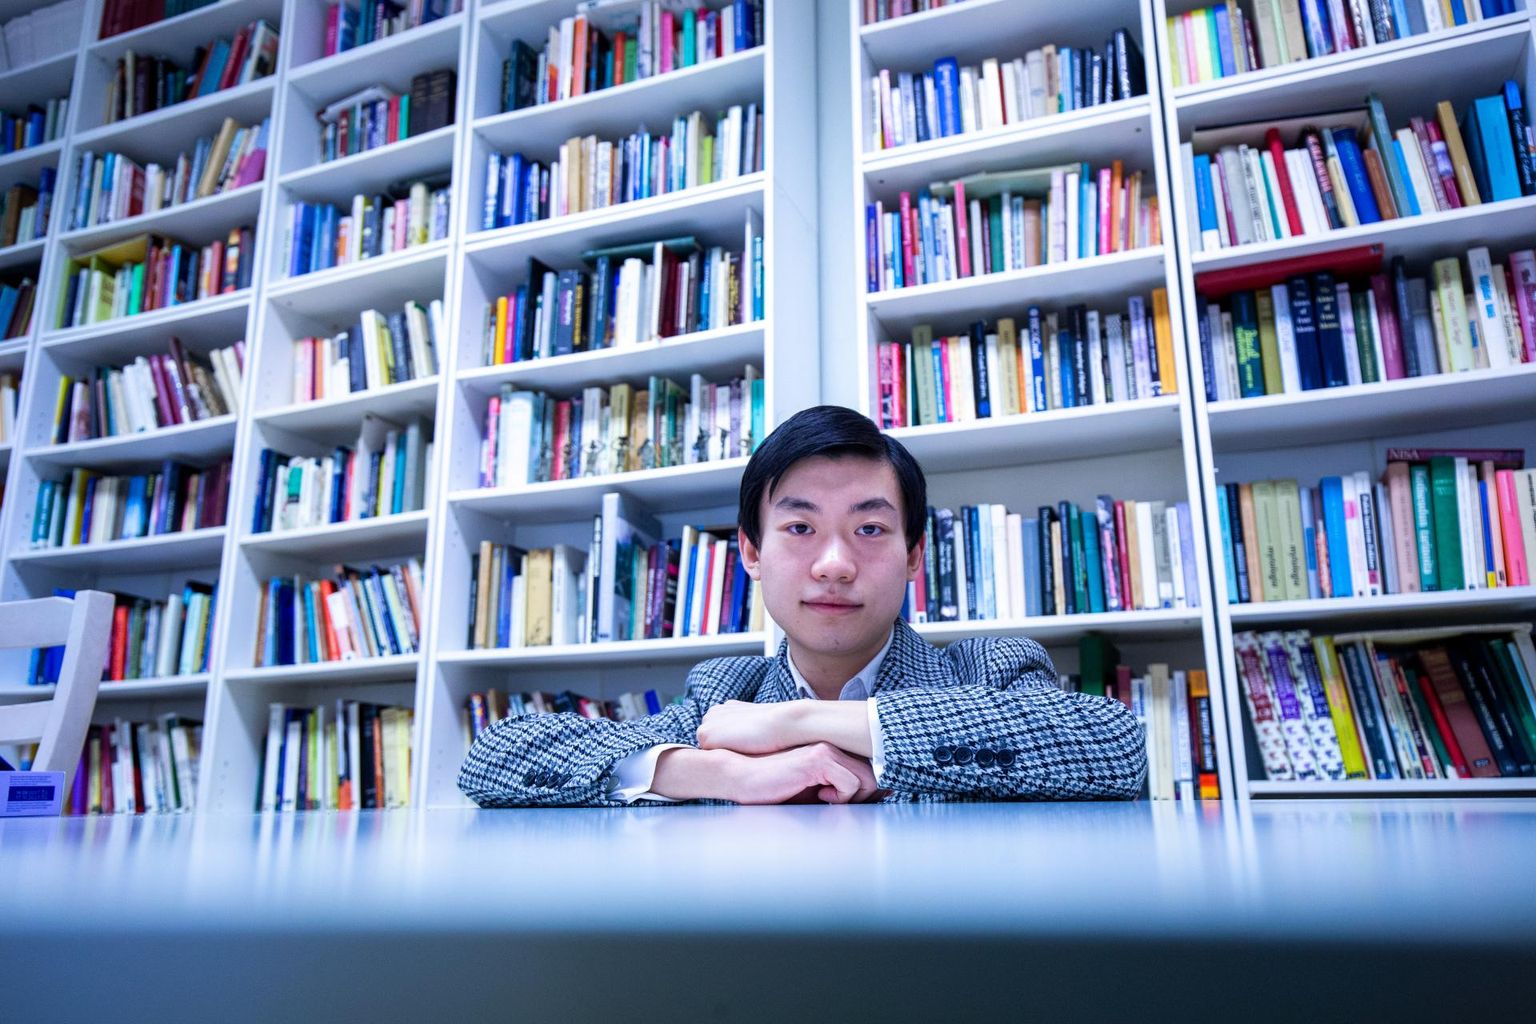 Hiina 14-miljonilisest suurlinnast pärit Haozhen Li leiab, et Tartu suurusest talle piisab. Siin on aega õppimiseks ja mõtlemiseks.